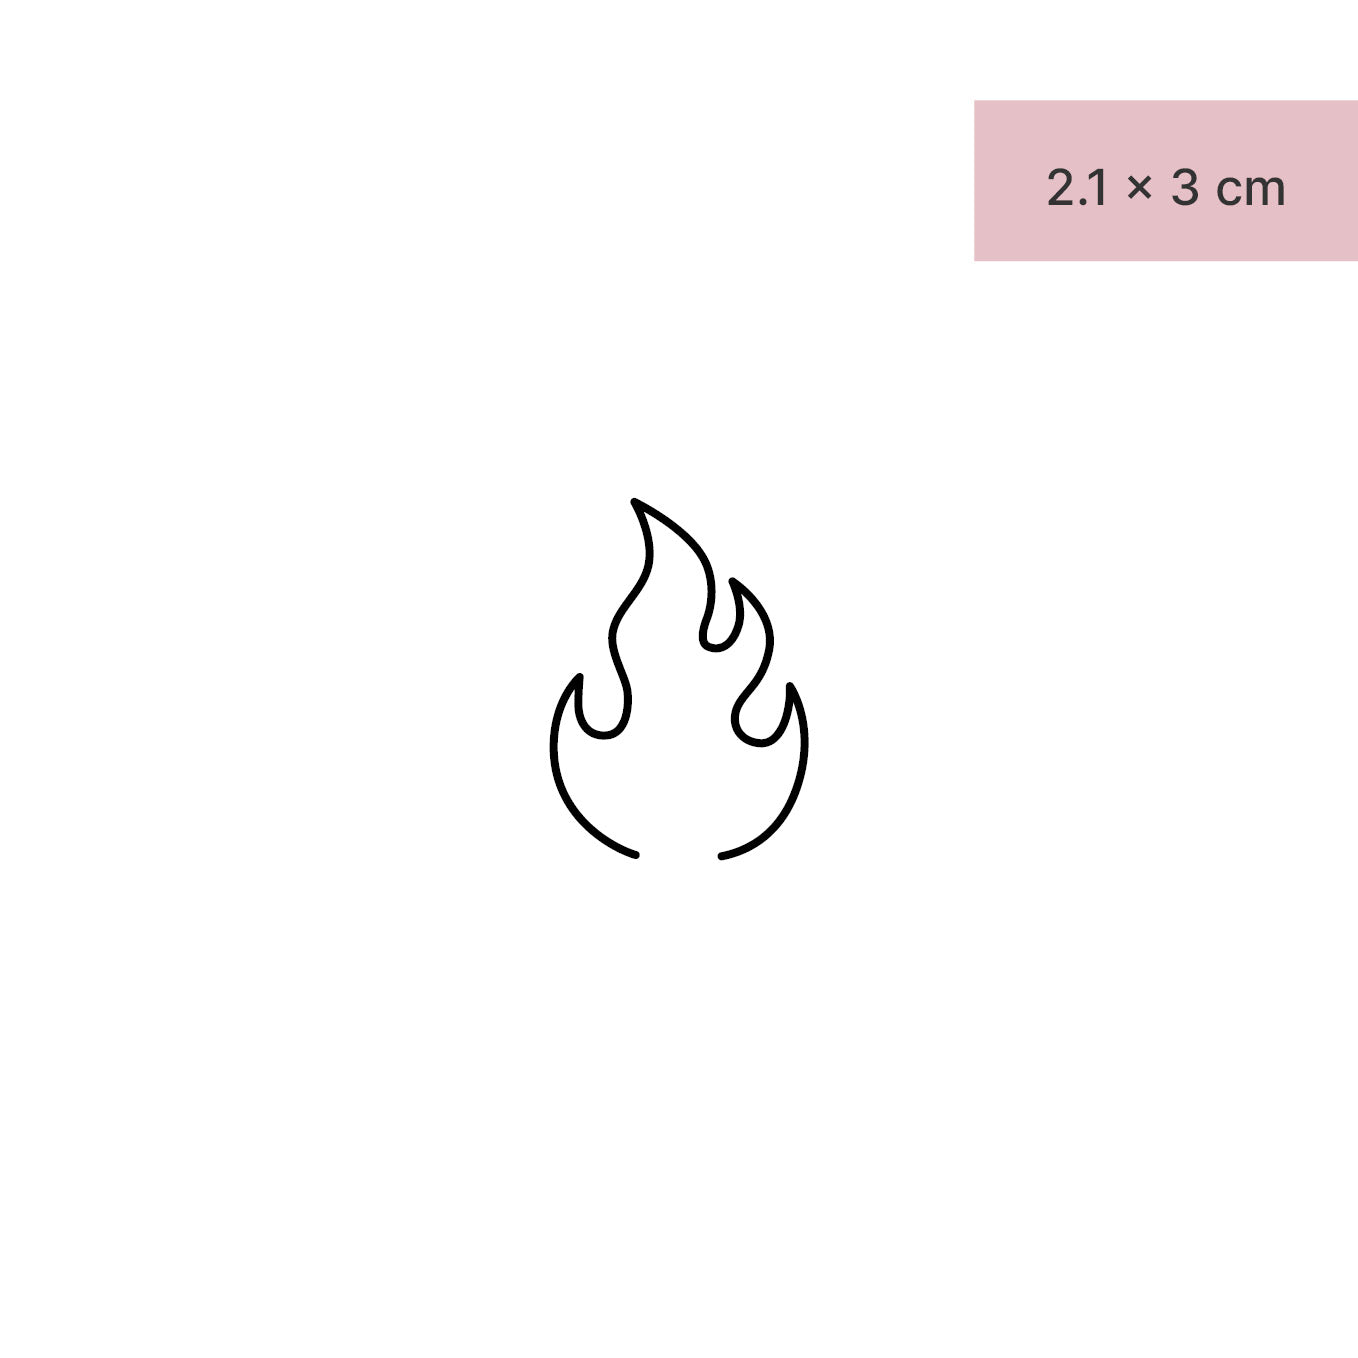 Flame – INK ART LINK